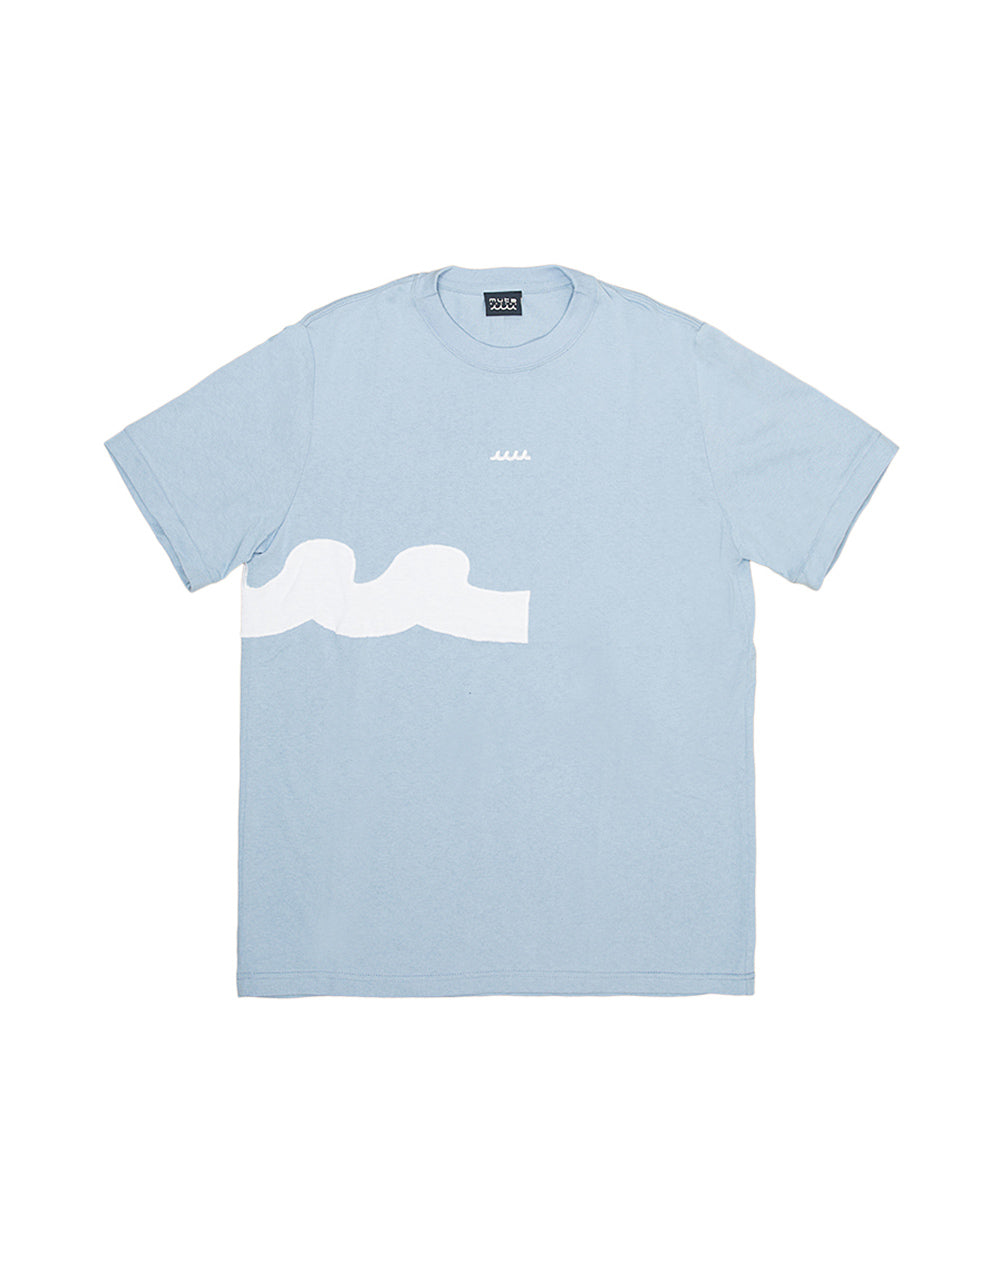 ACANTHUS x muta MARINE TURN WAVE Tシャツ [全5色] – muta Online Store